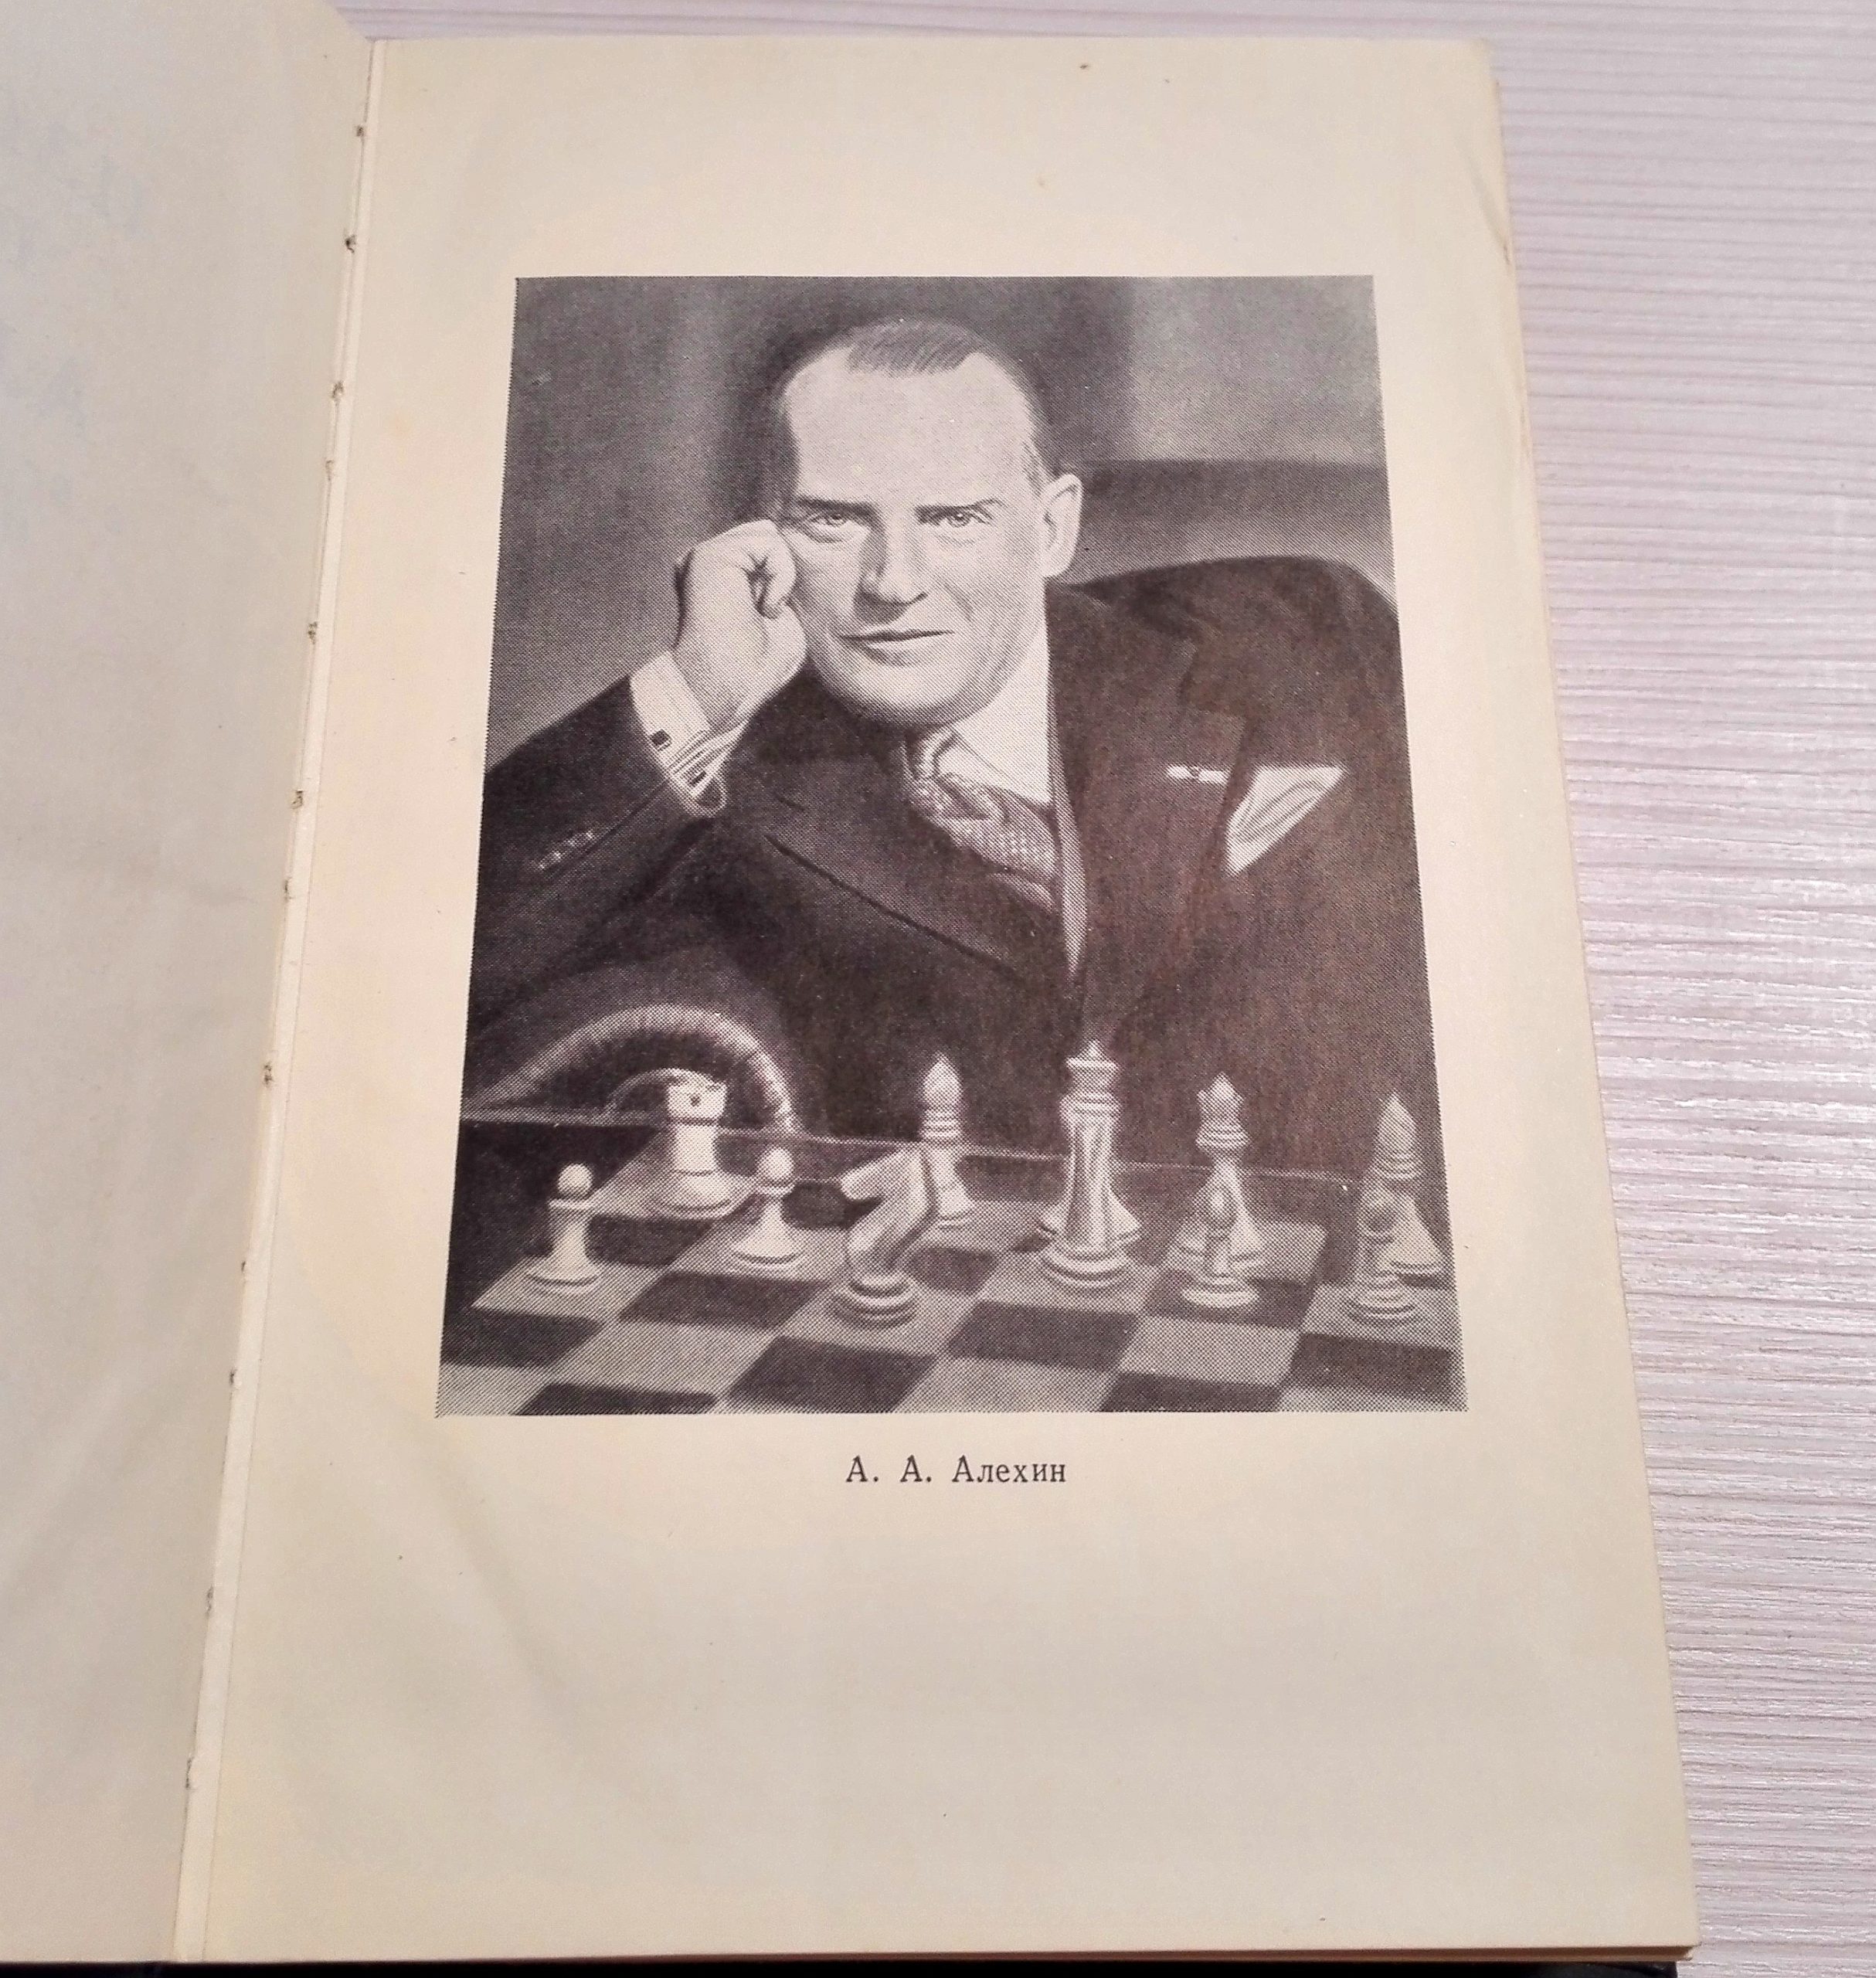 kotov chess books scaled